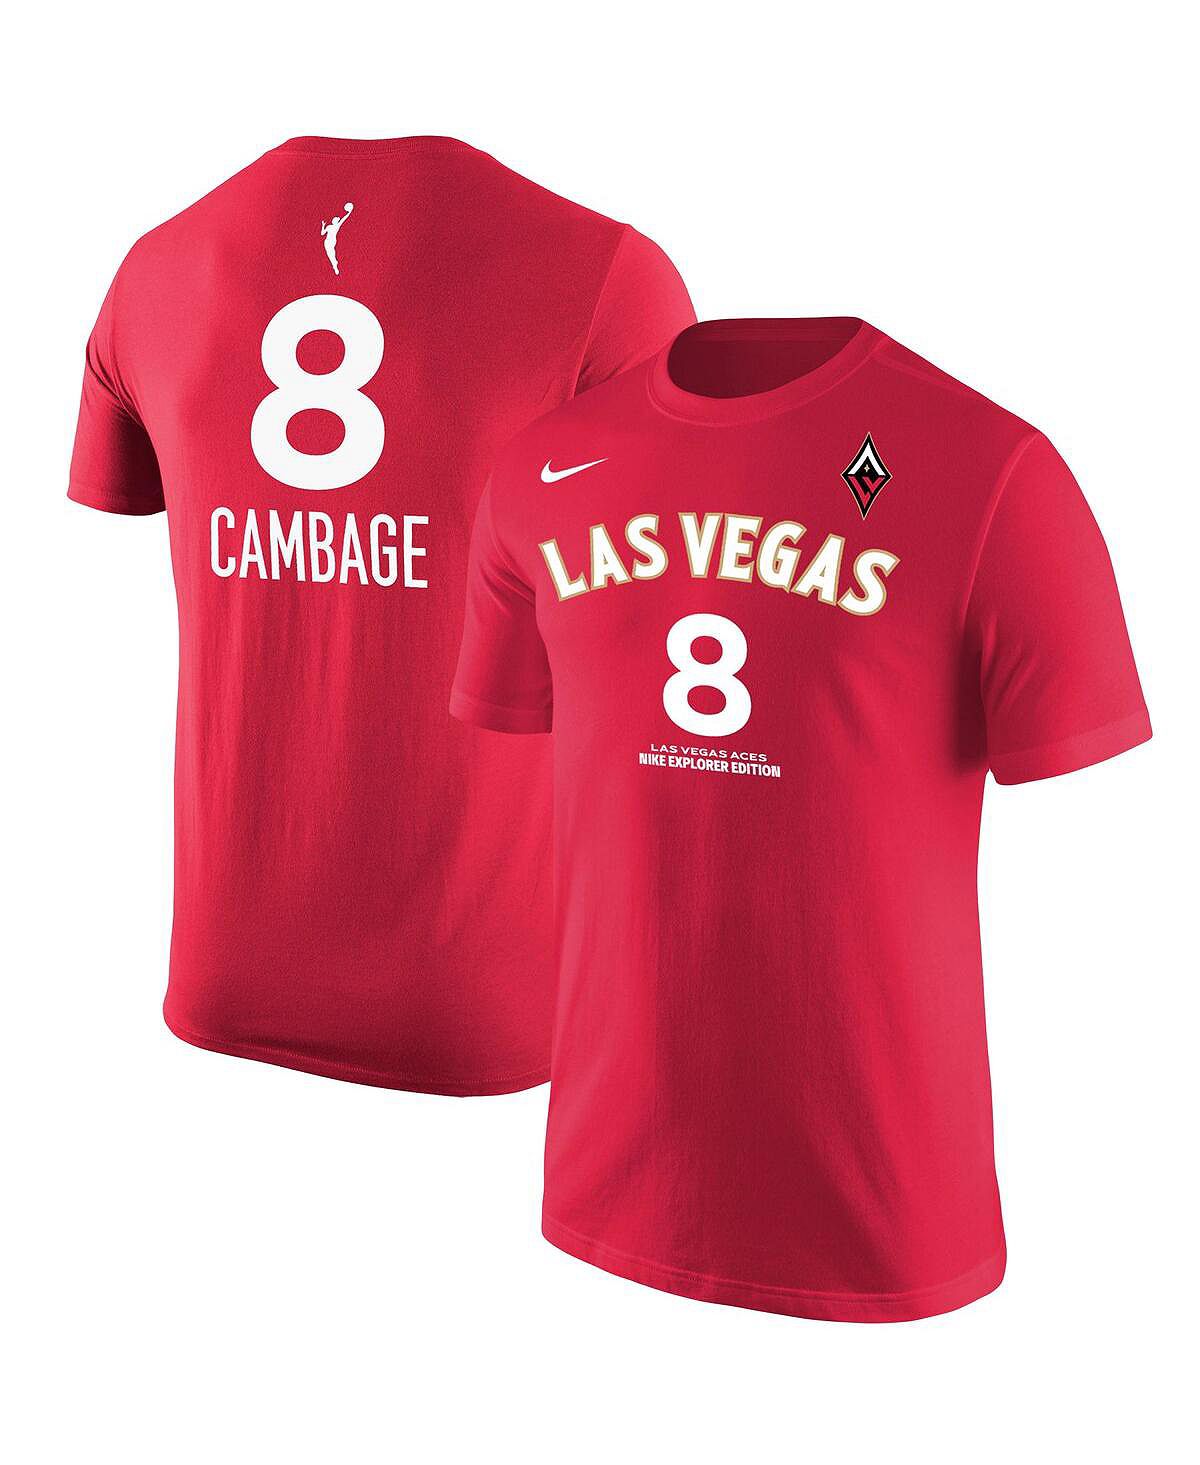 Мужская красная футболка Liz Cambage Las Vegas Aces Explorer Edition с именем и номером Nike nugent liz unravelling oliver